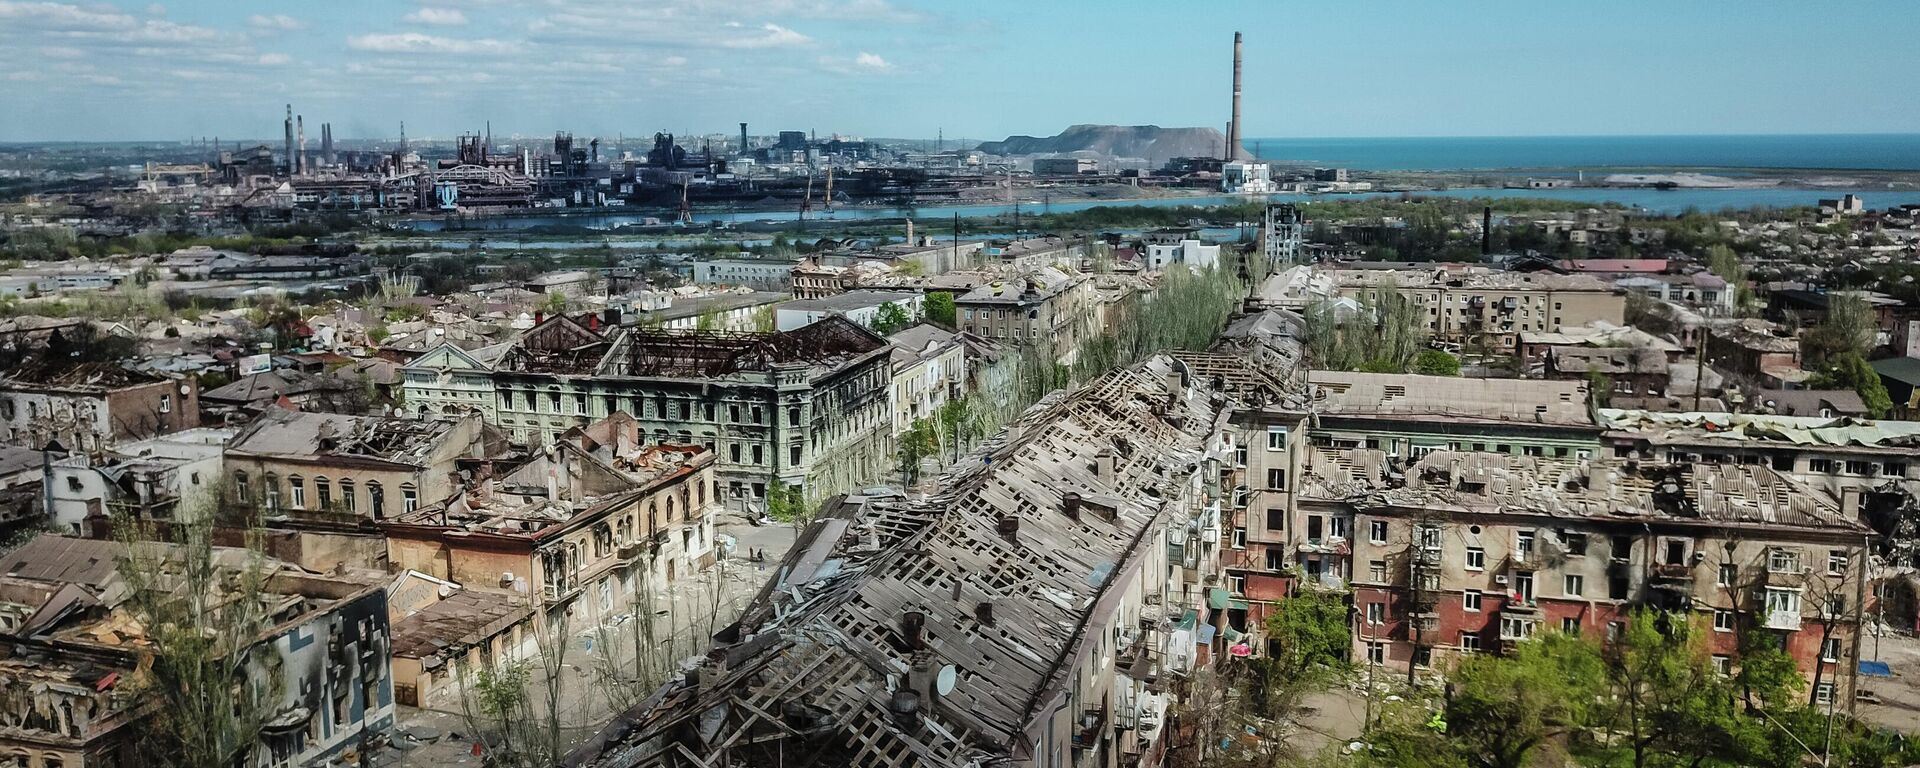 Các tòa nhà bị phá hủy ở trung tâm Mariupol. Ở hậu cảnh là nhà máy luyện kim Azovstal. - Sputnik Việt Nam, 1920, 01.05.2022